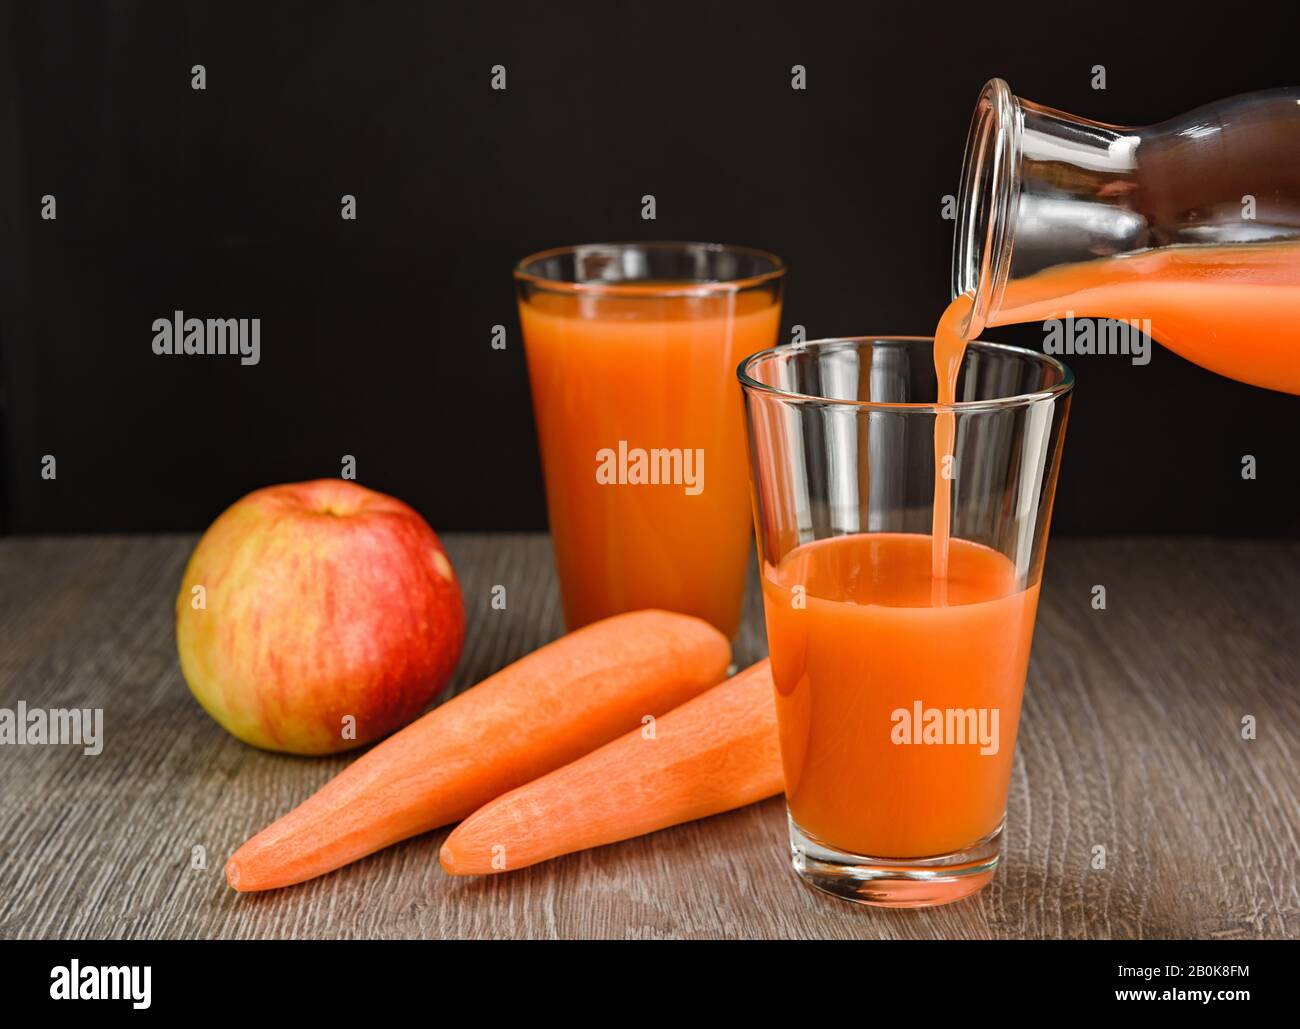 Le jus de pomme de carotte est versé de la bouteille dans un verre. Il y a des carottes et des pommes sur la table. Banque D'Images